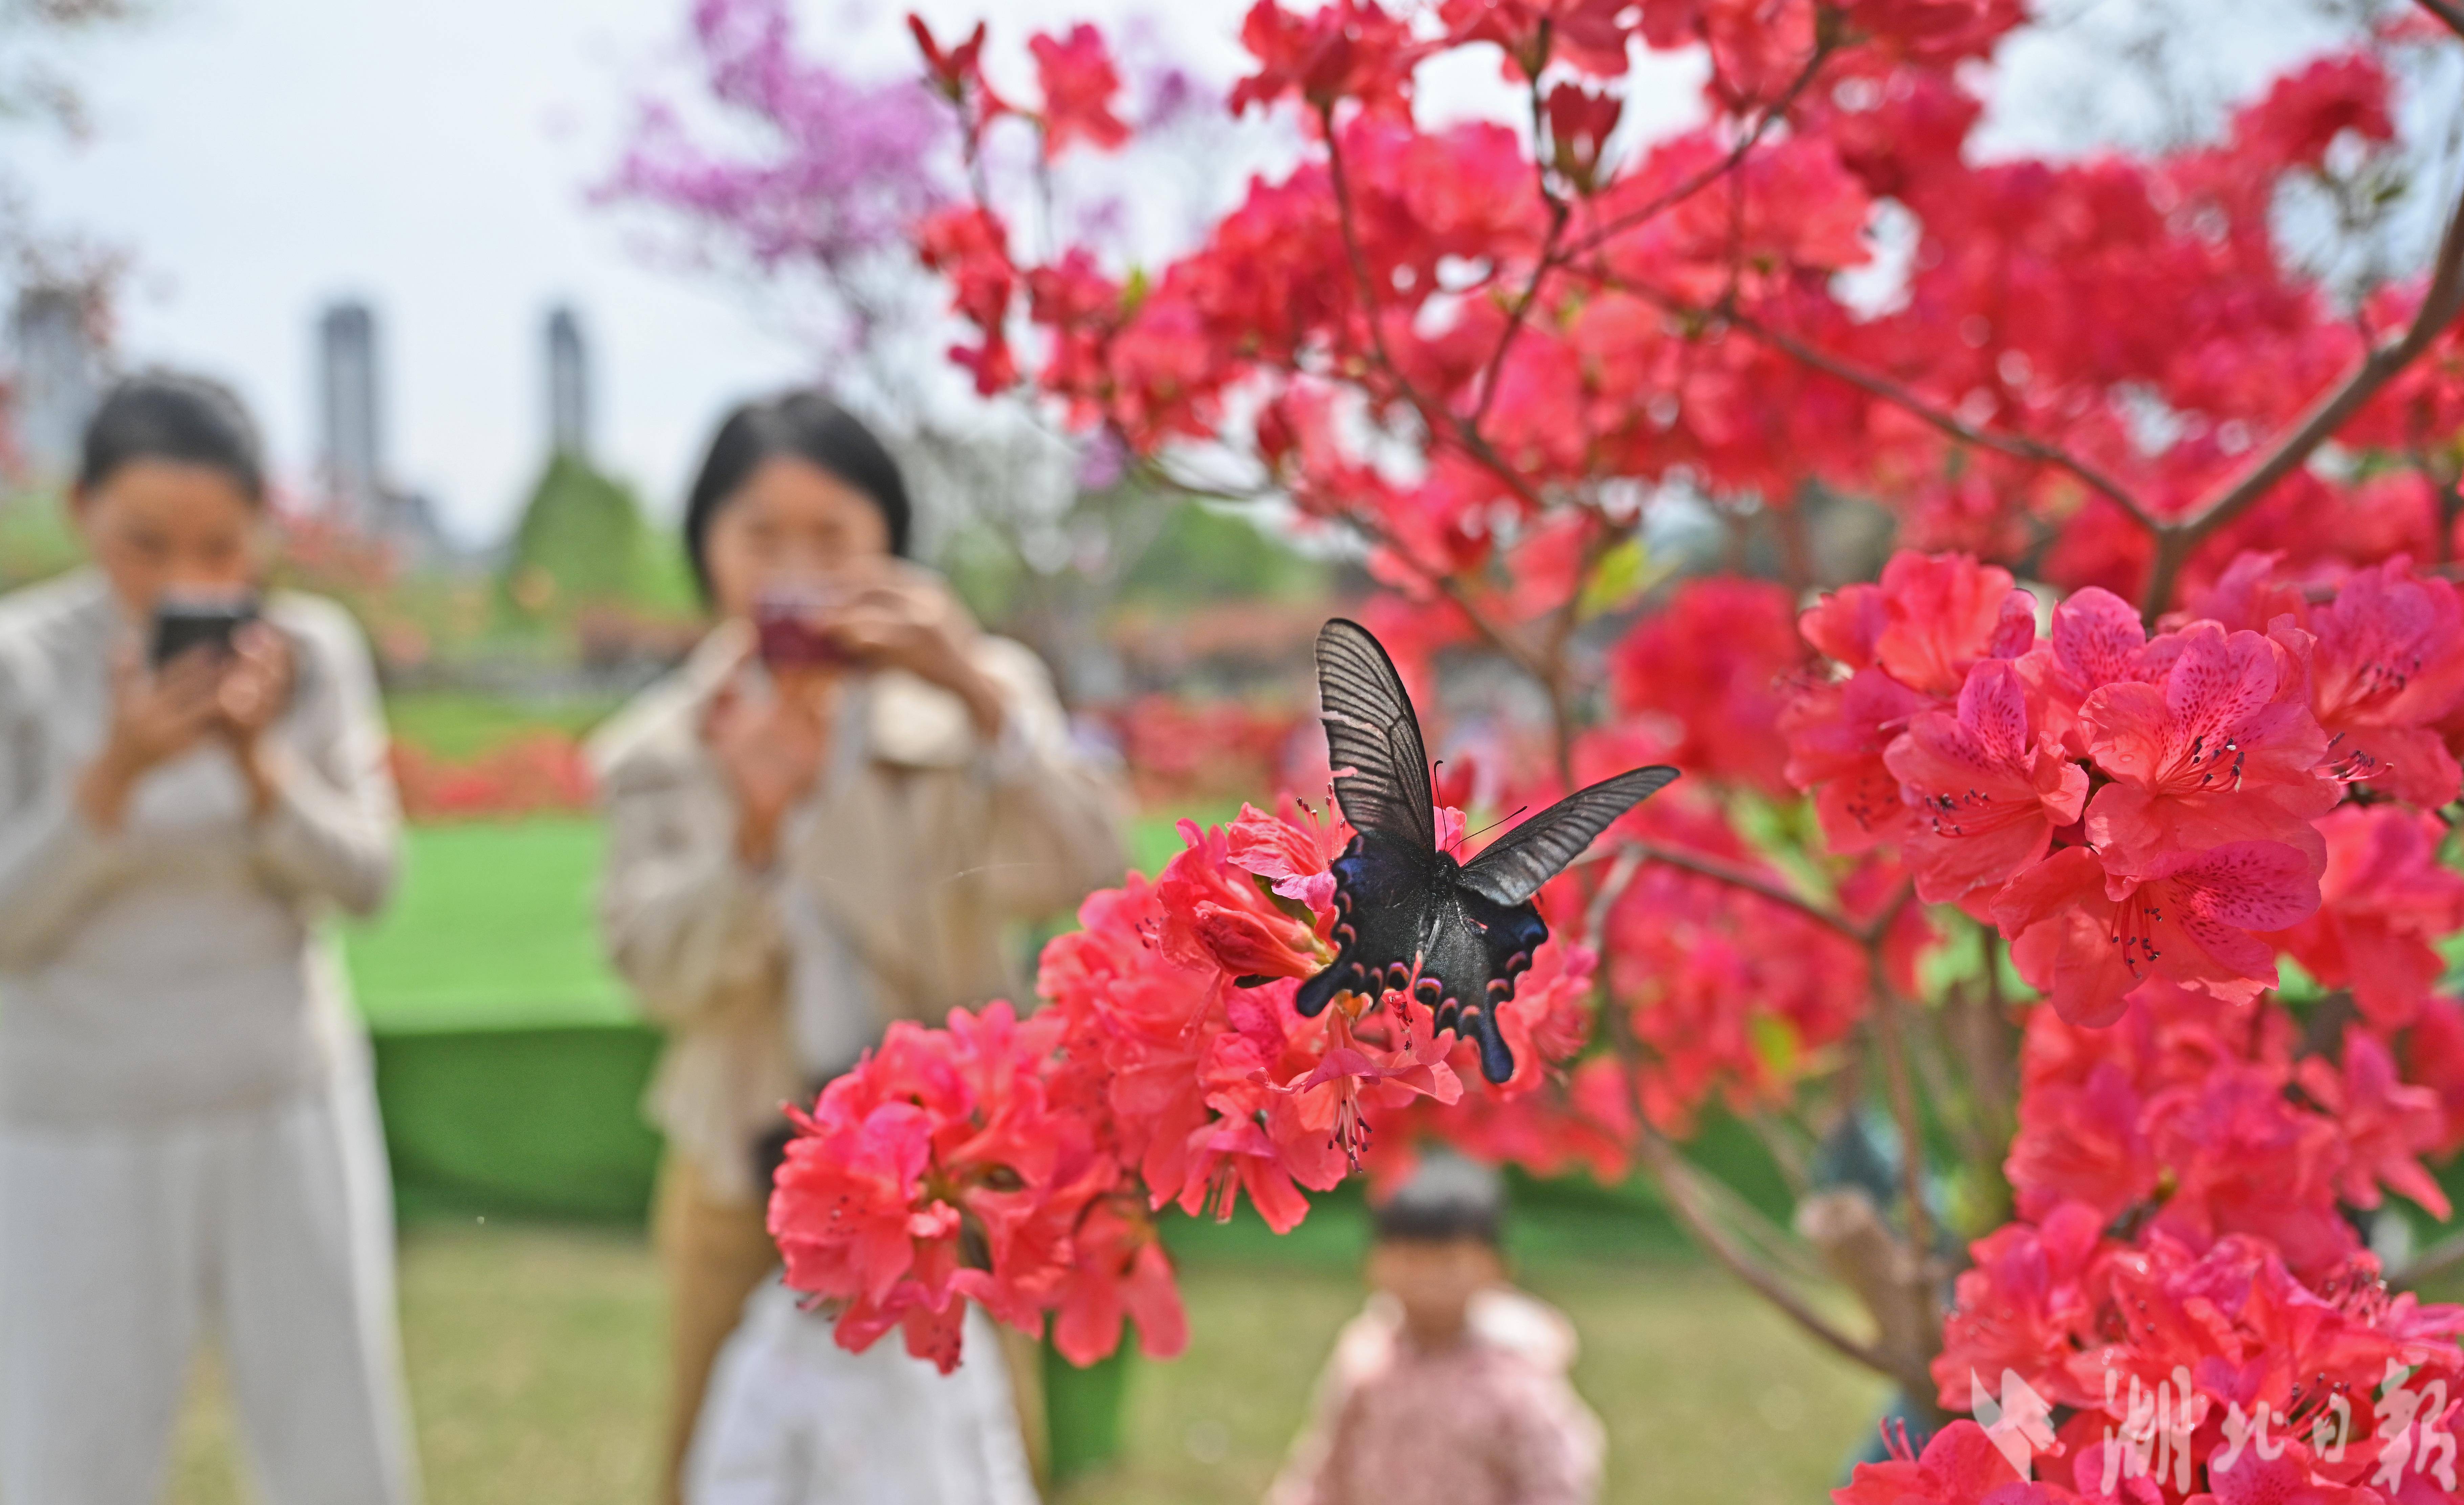 宜昌濕地公園辦起名貴杜鵑花展